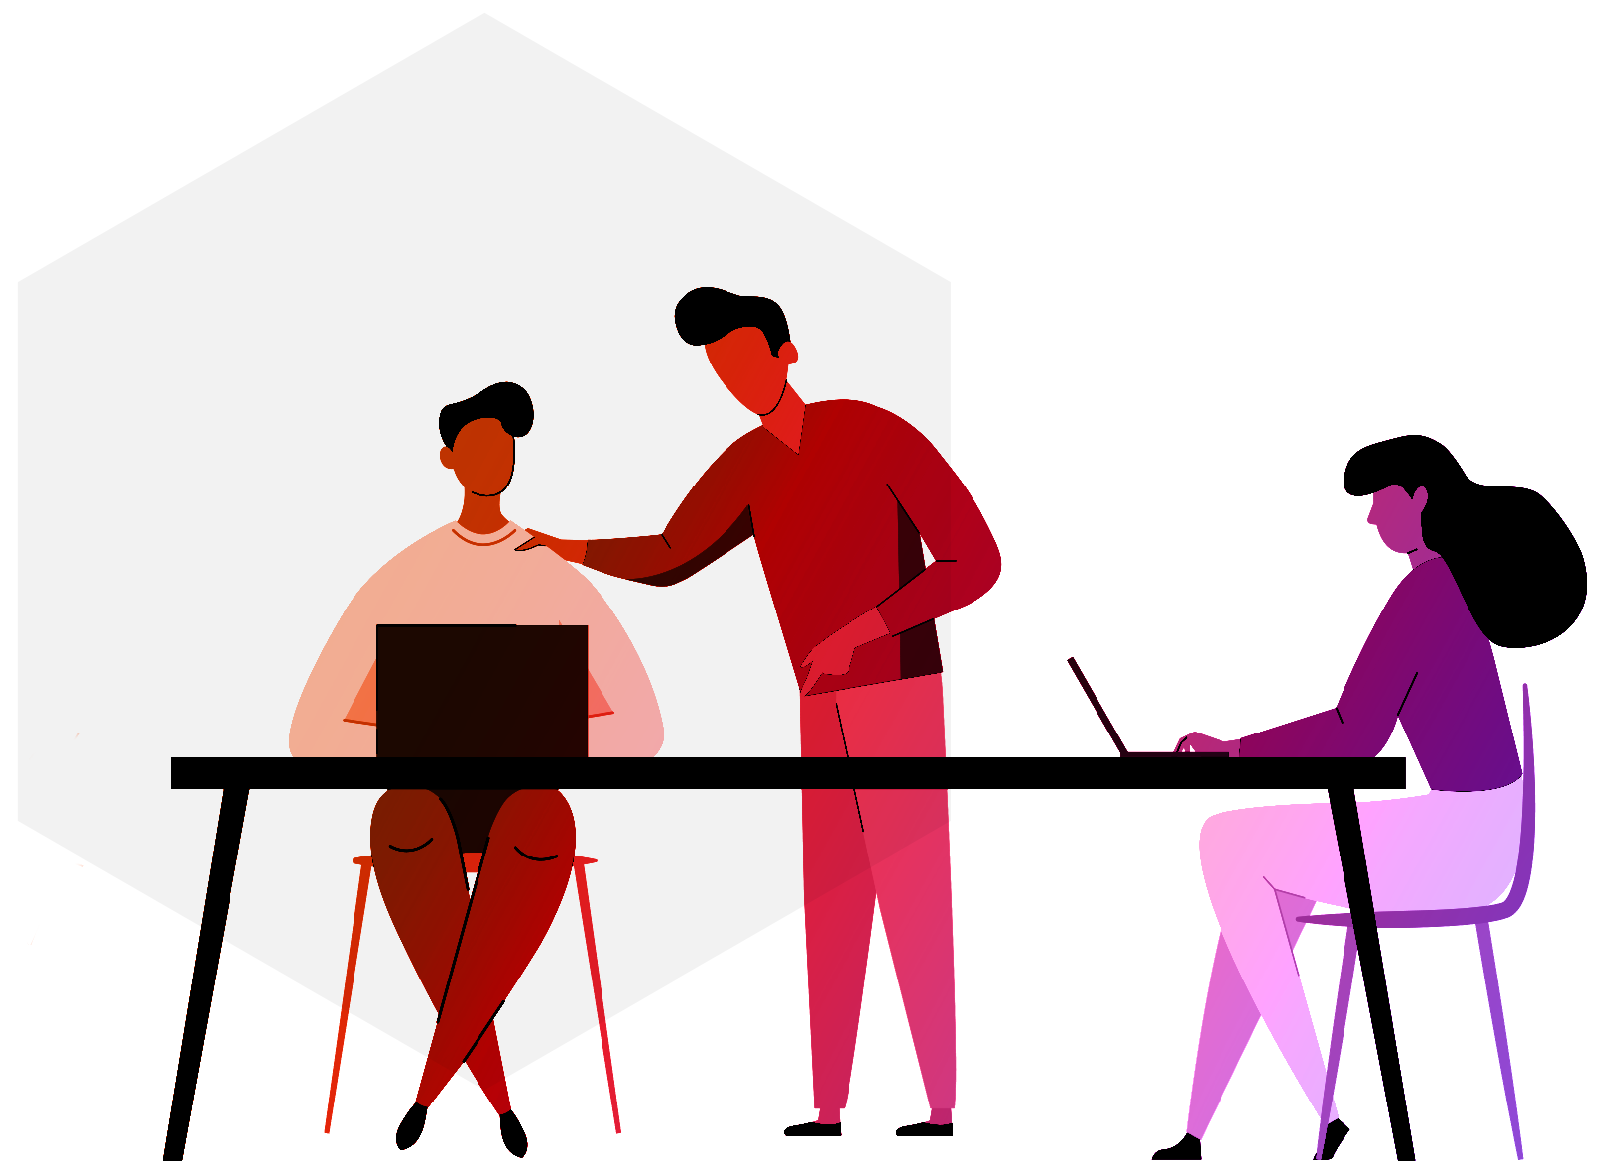 Illustration depicting people working together at a desk